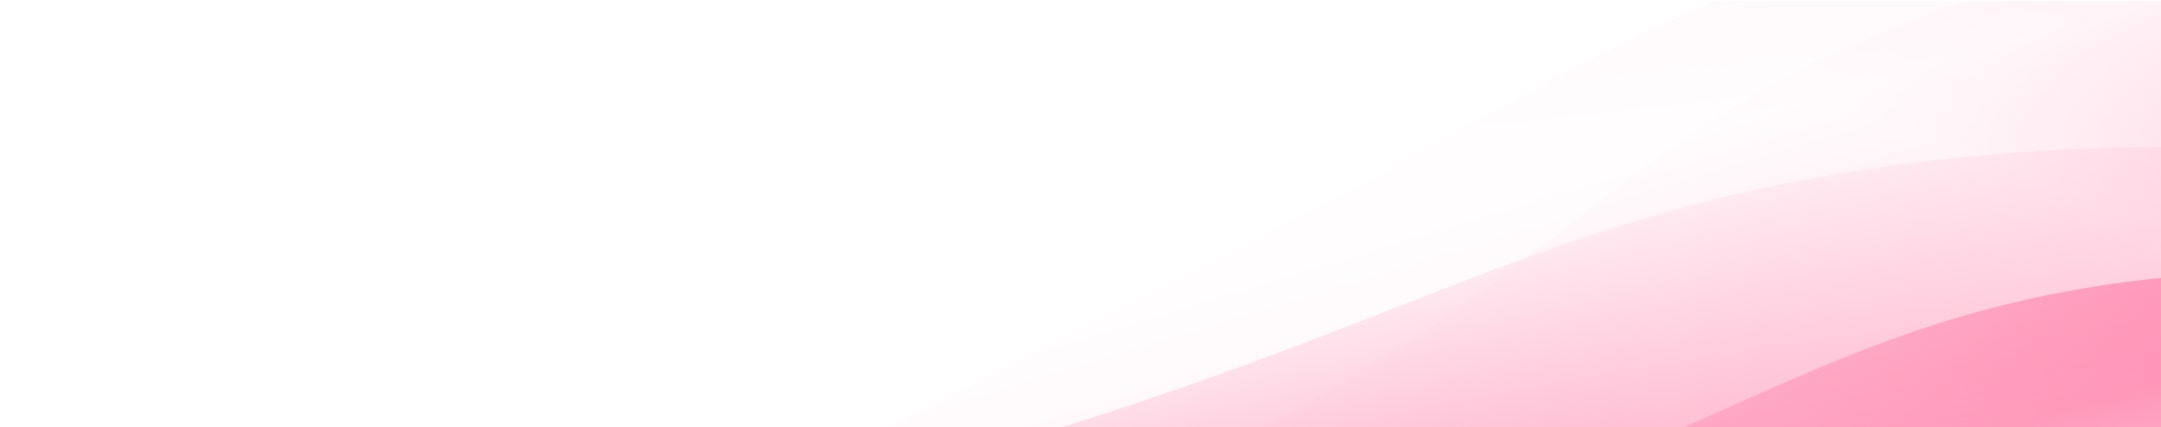 cta-banner_fullwidth_light_pink